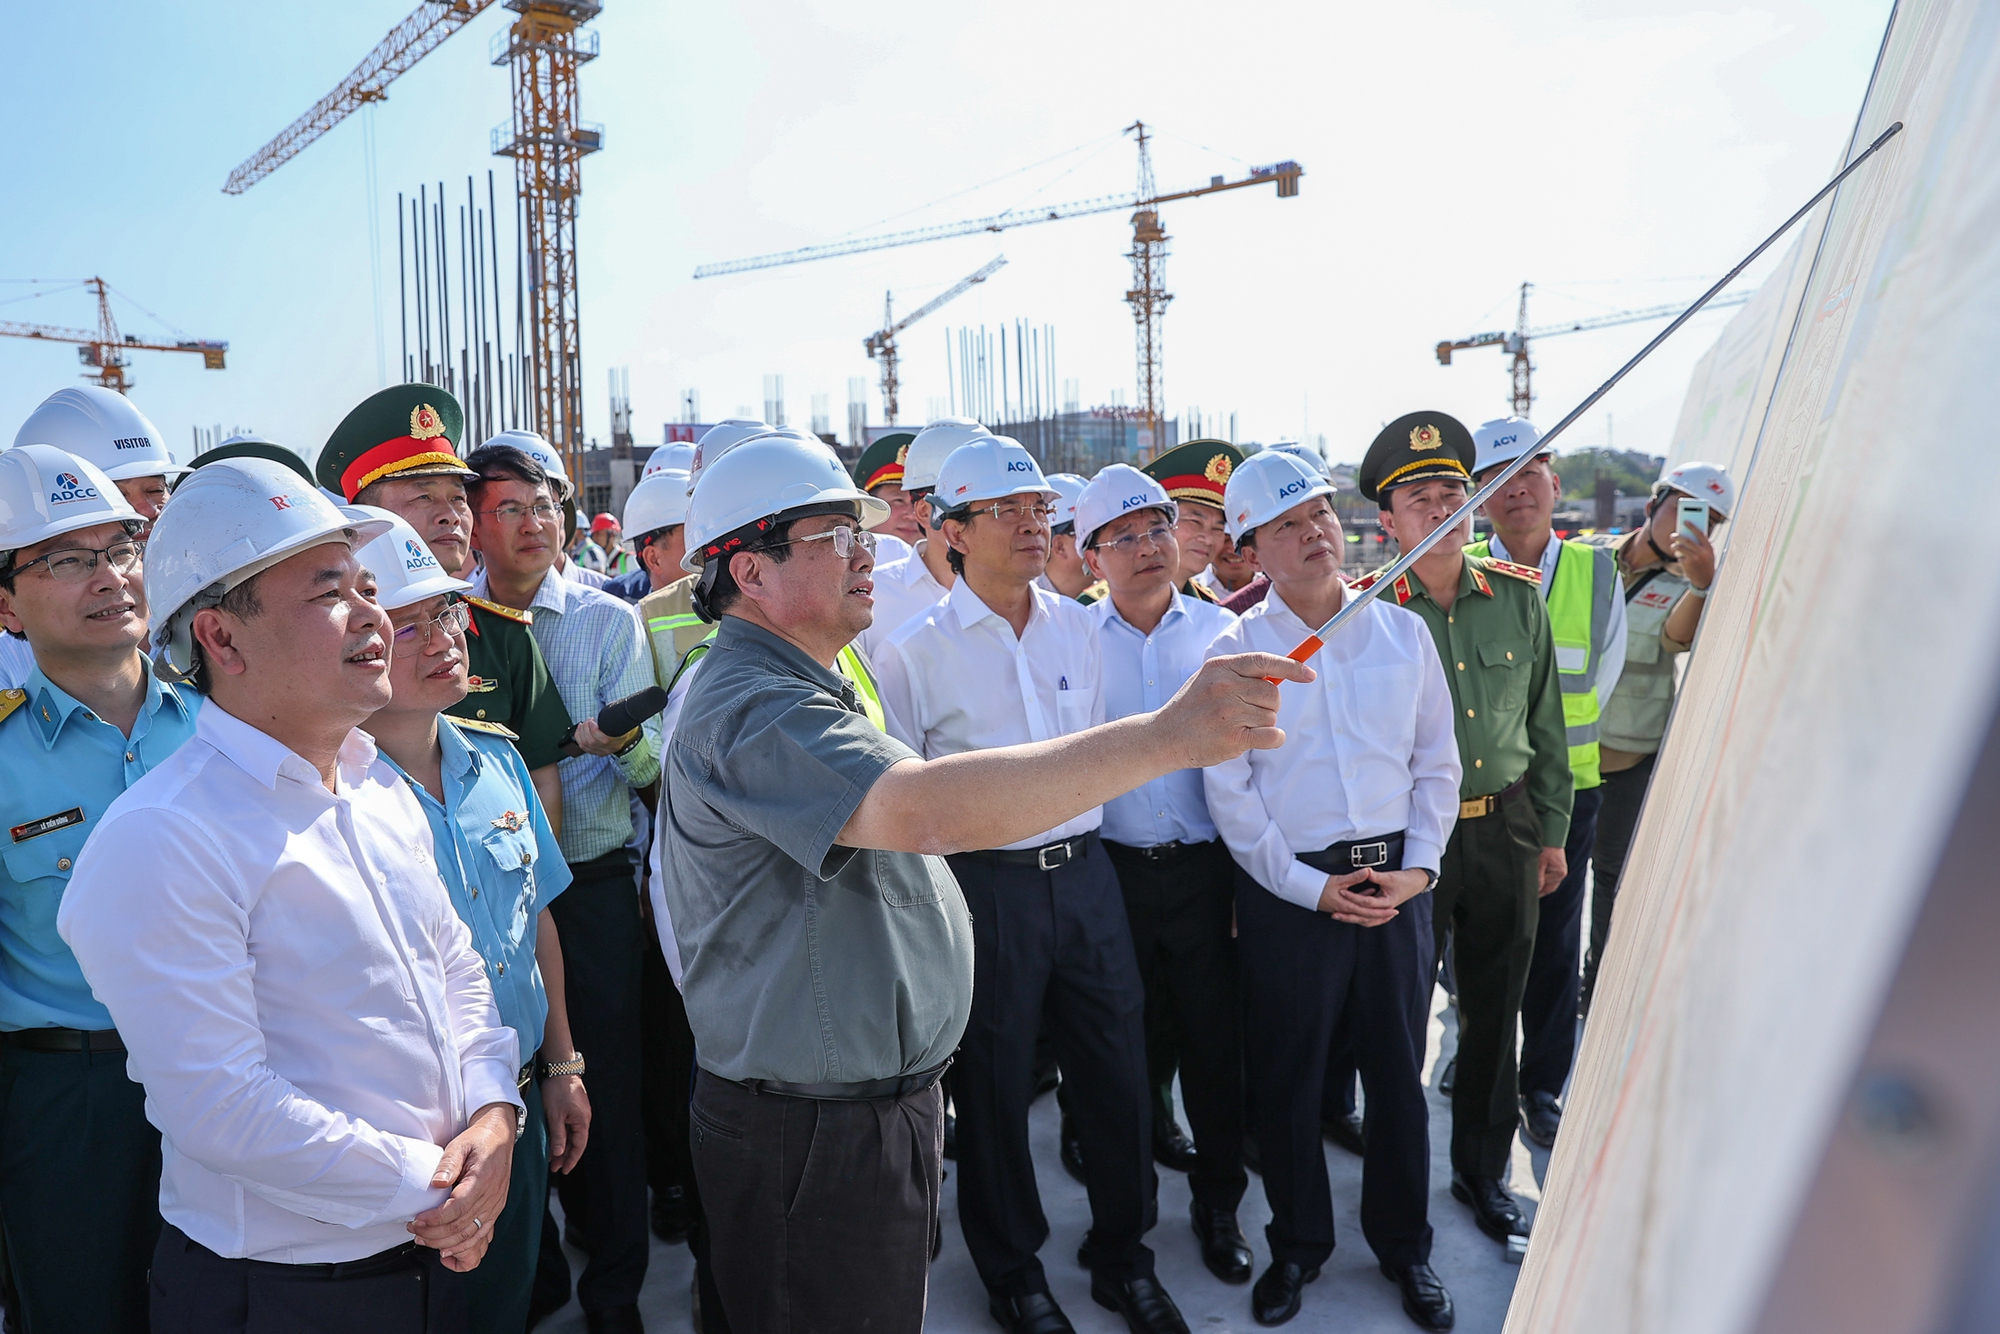 Thủ tướng làm việc và kiểm tra dự án nhà Ga hành khách T3 Tân Sơn Nhất (TPHCM) - Ảnh: VGP/Nhật Bắc